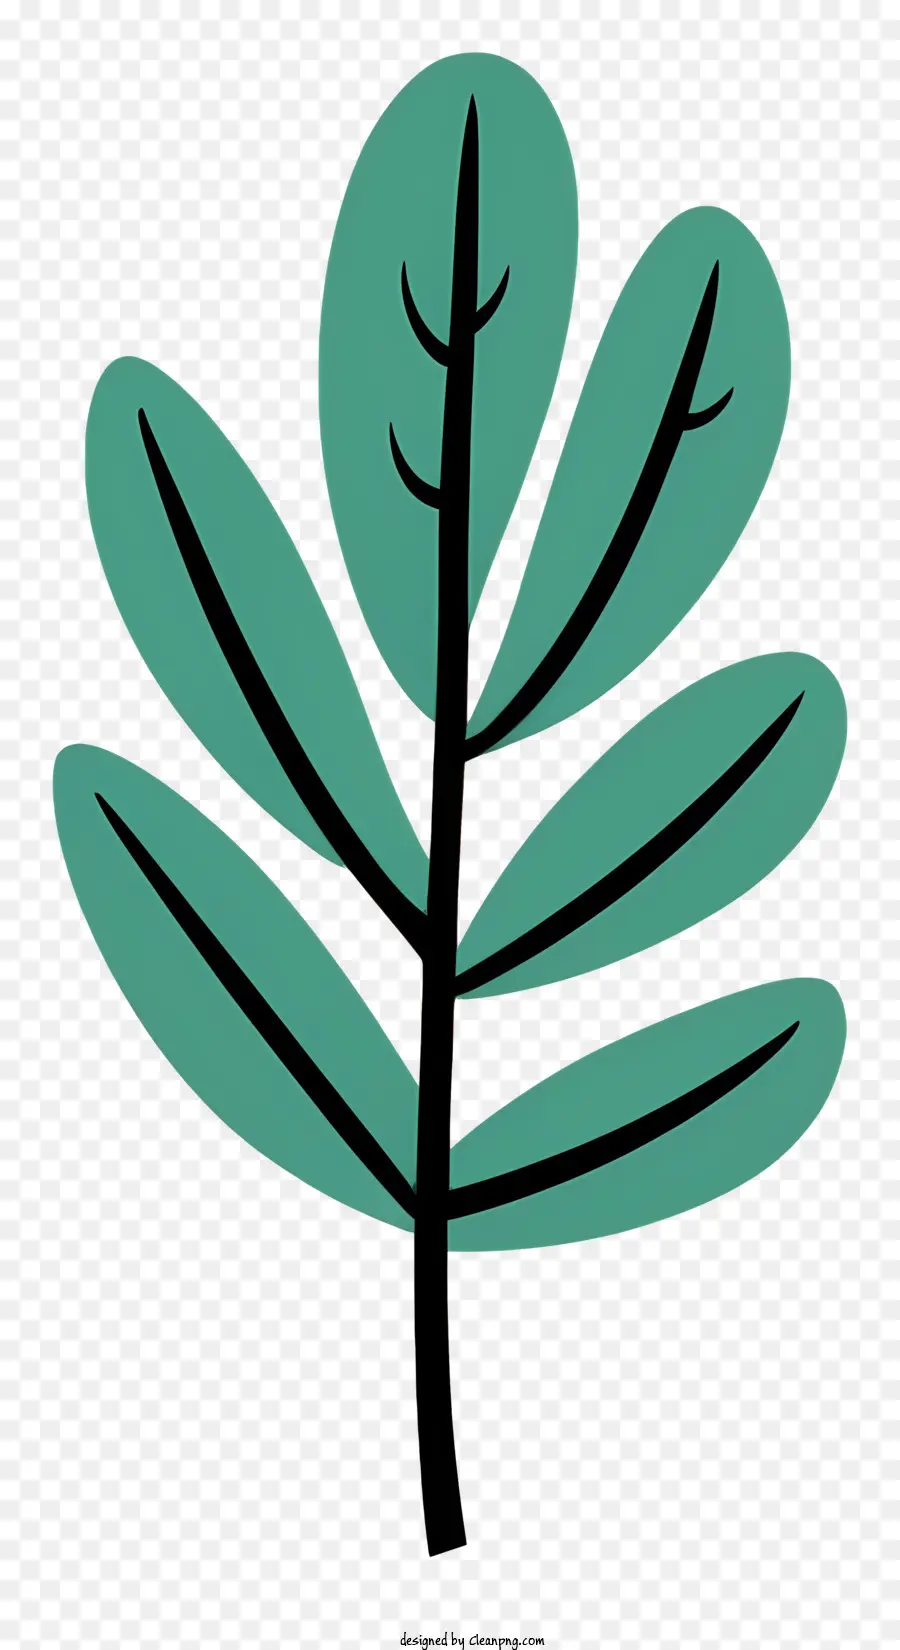 pianta a foglia verde foglie piccole foglie design piatto nessuna ombre senza ombreggiatura - Pianta a foglia verde con piccole foglie, design piatto